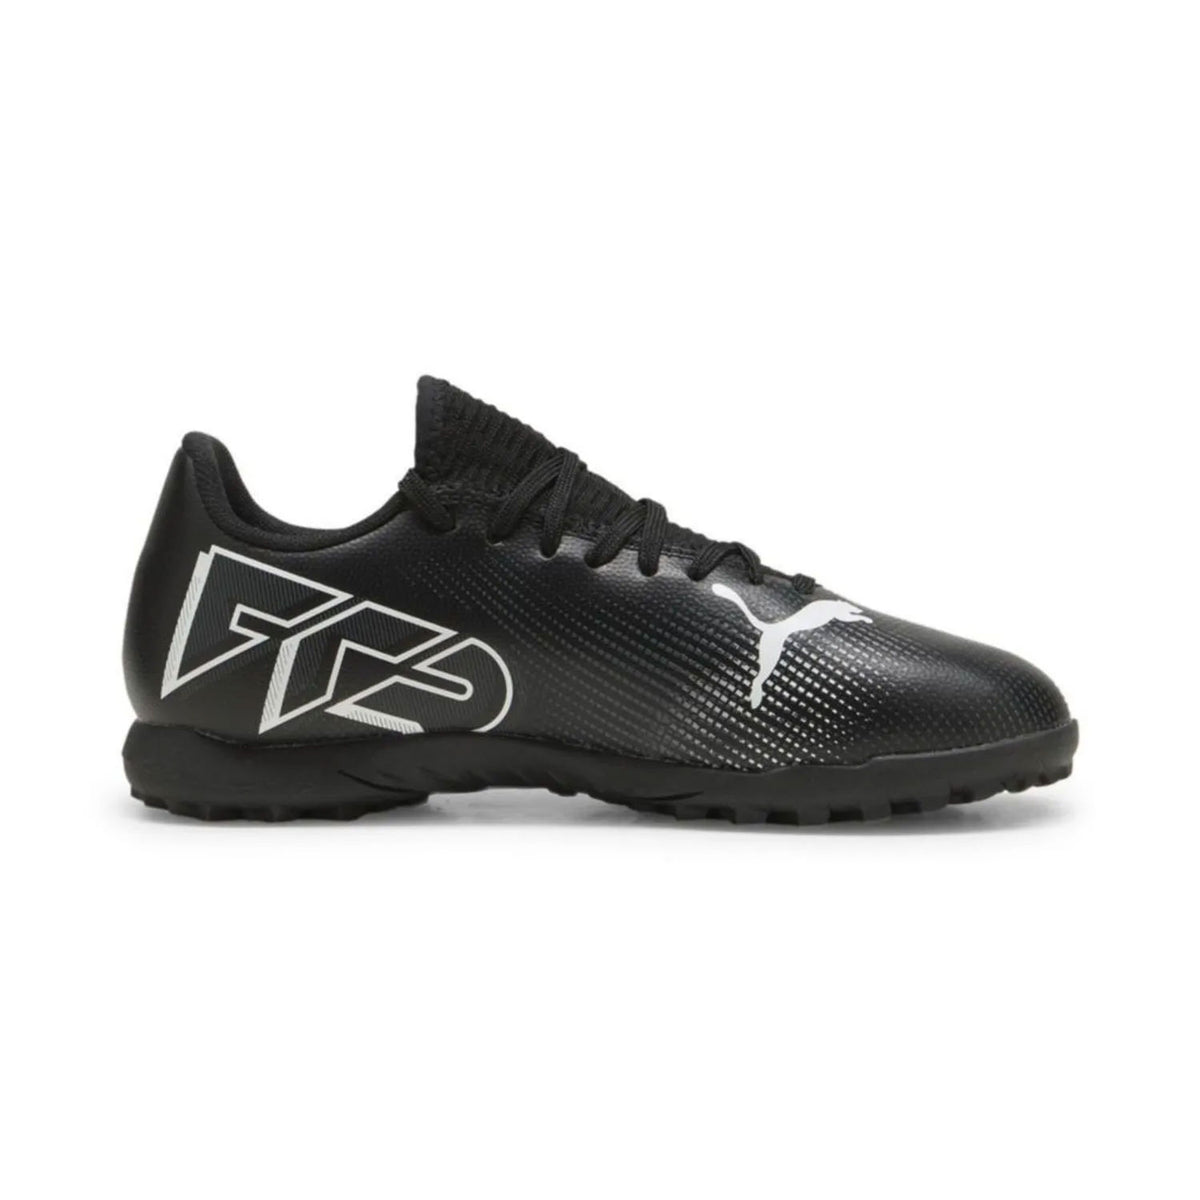 פומה נעלי FUTURE 7 PLAY TT קטרגל לילדים בצבע שחור-Puma-28-נאקו